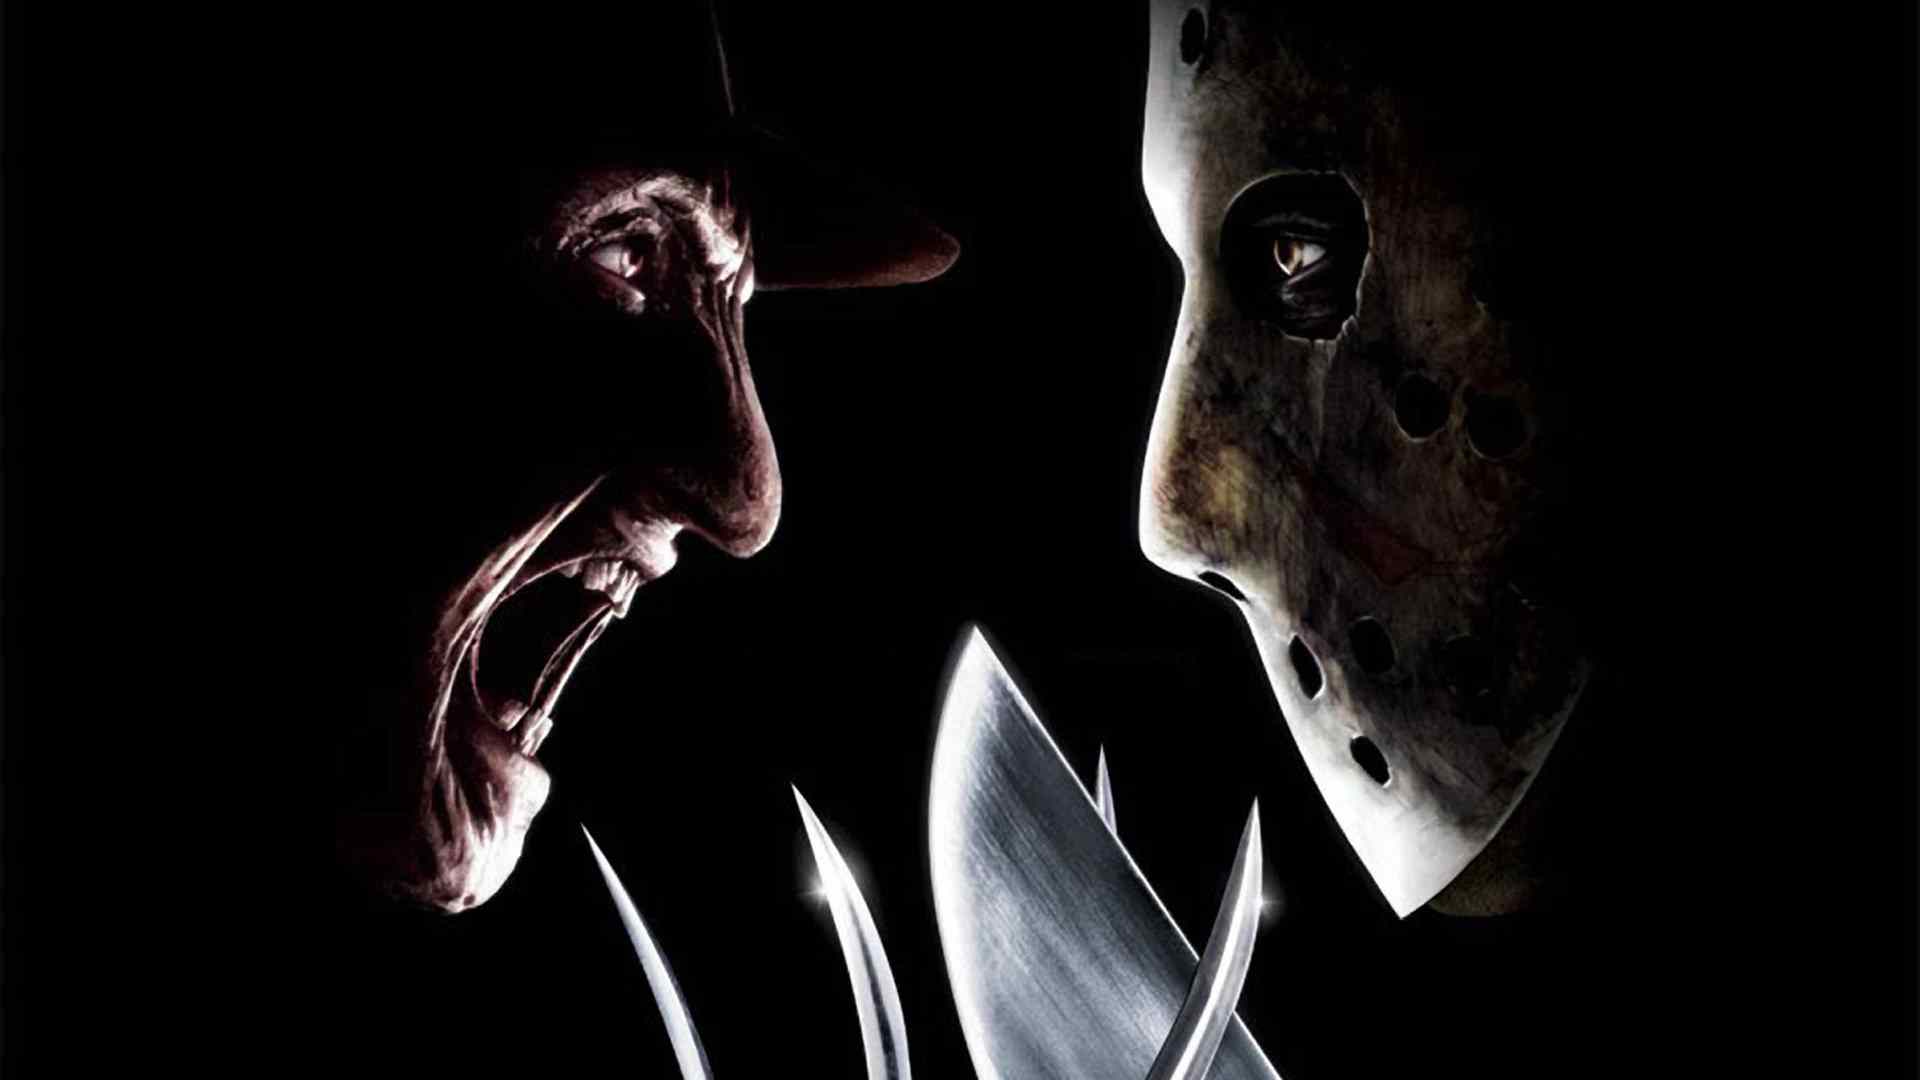 Freddy vs Jason 2003